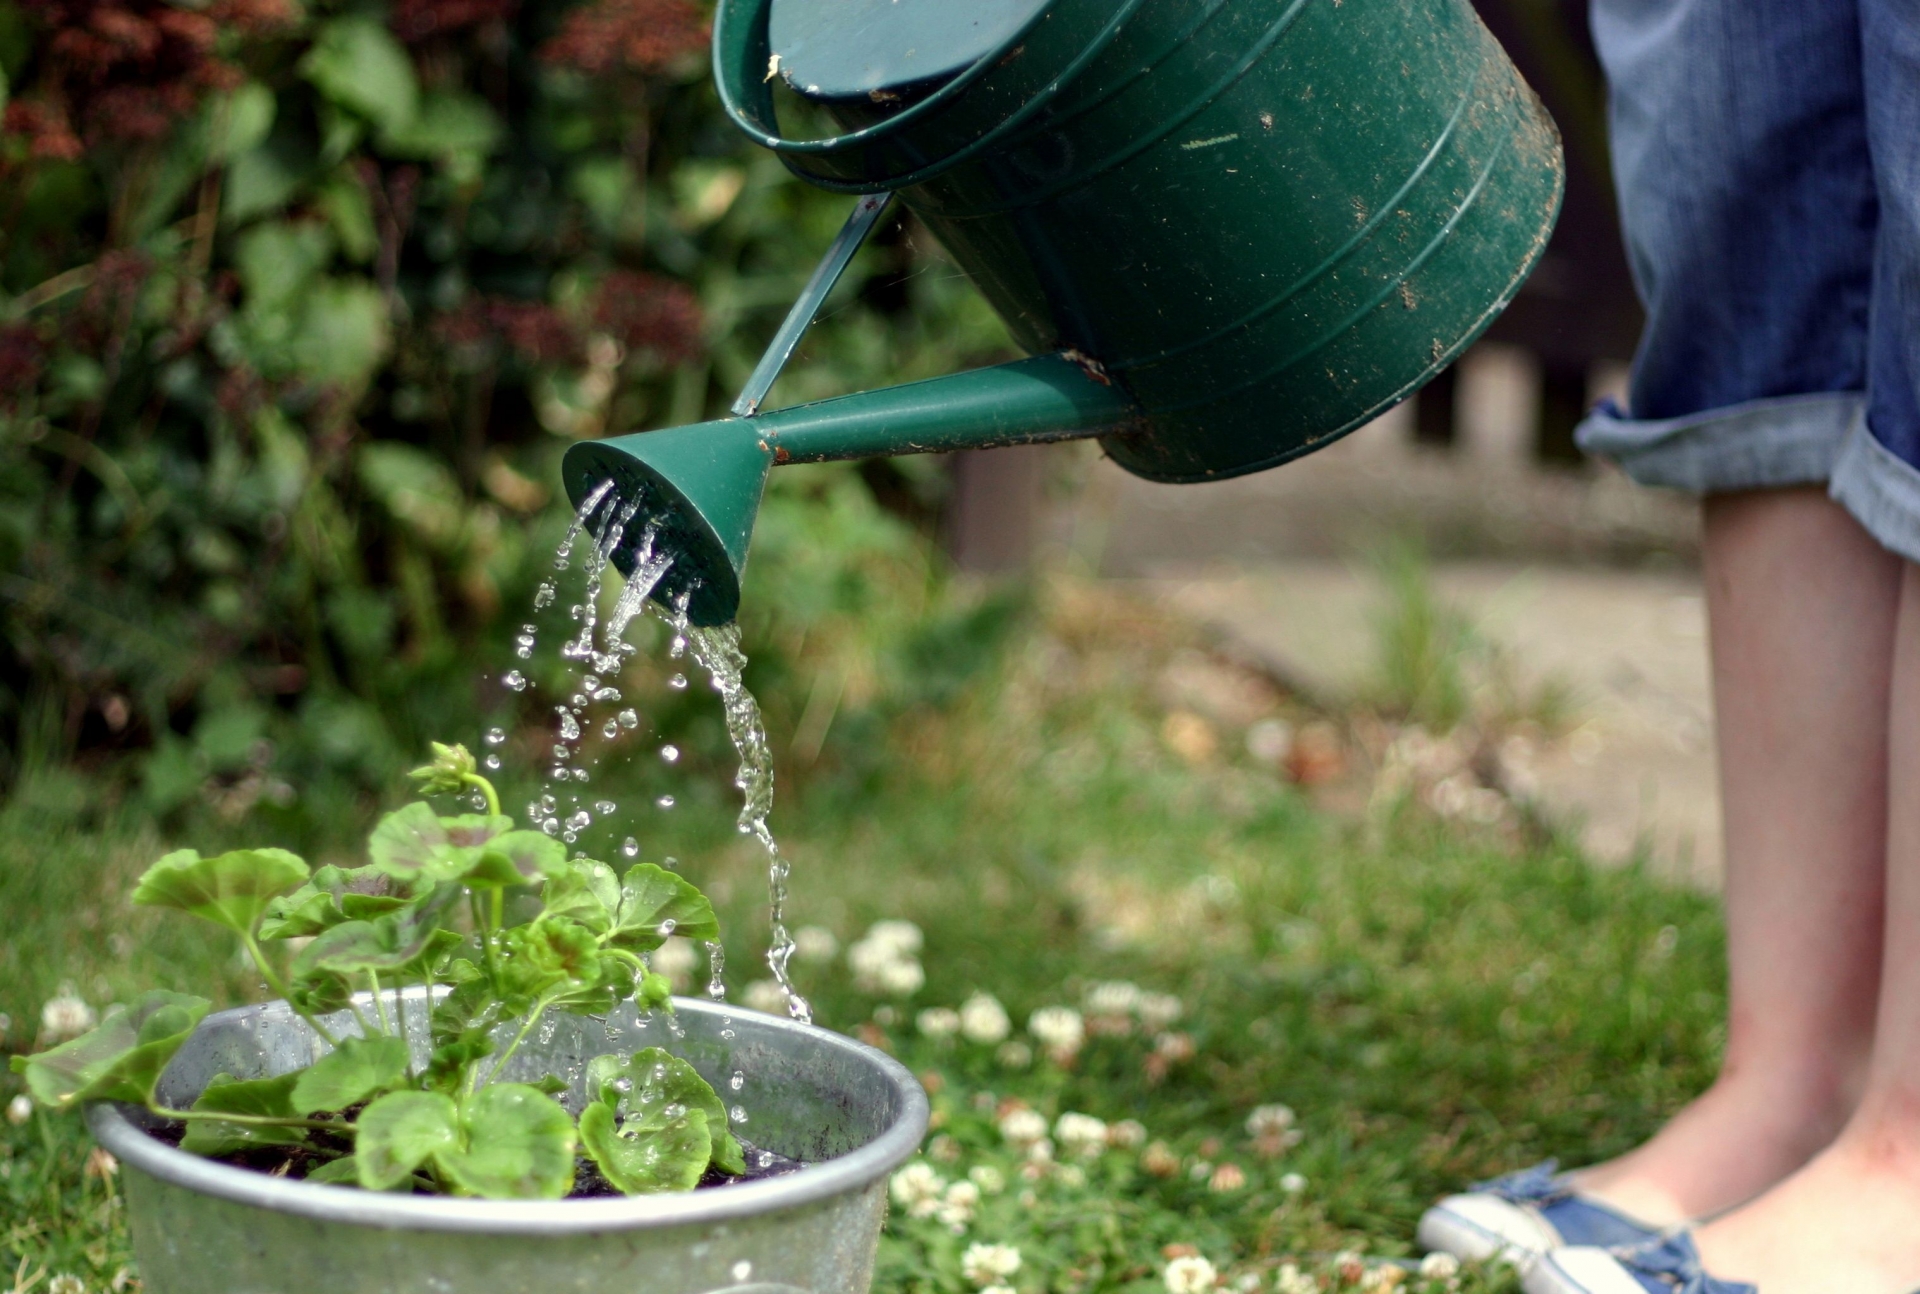 Cây trồng cần nước để chuyển hóa chất dinh dưỡng và phát triển, nhưng mỗi loại rau củ quả lại cần lượng nước khác nhau.